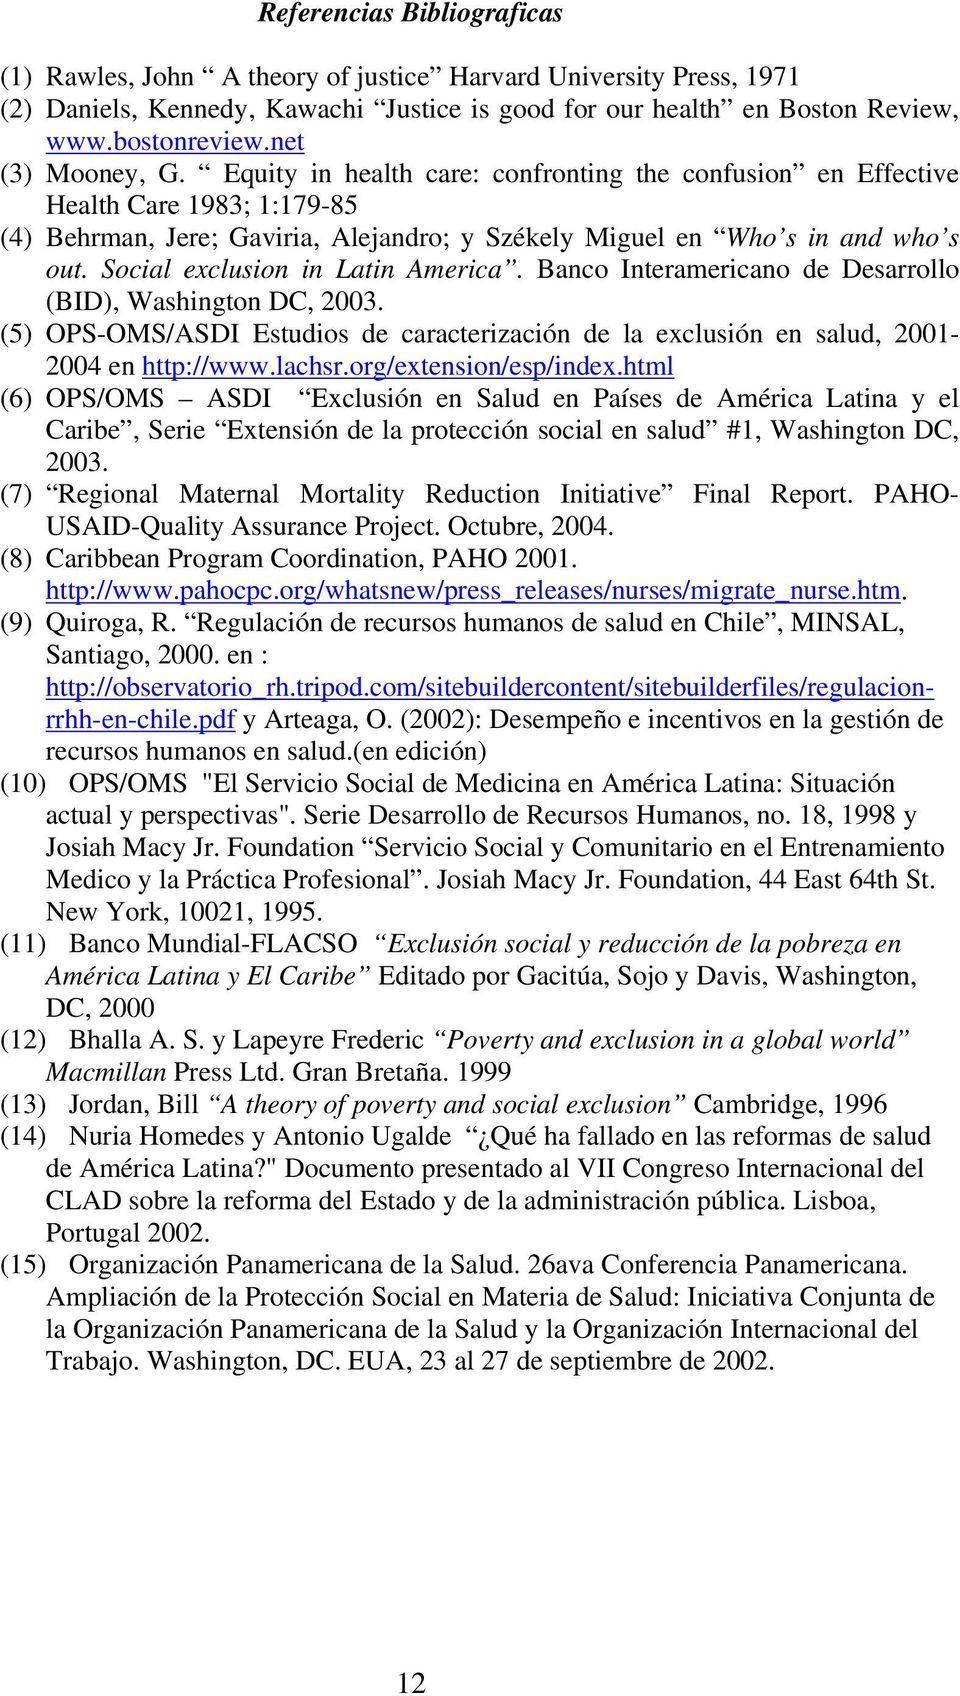 Social exclusion in Latin America. Banco Interamericano de Desarrollo (BID), Washington DC, 2003. (5) OPS-OMS/ASDI Estudios de caracterización de la exclusión en salud, 2001-2004 en http://www.lachsr.